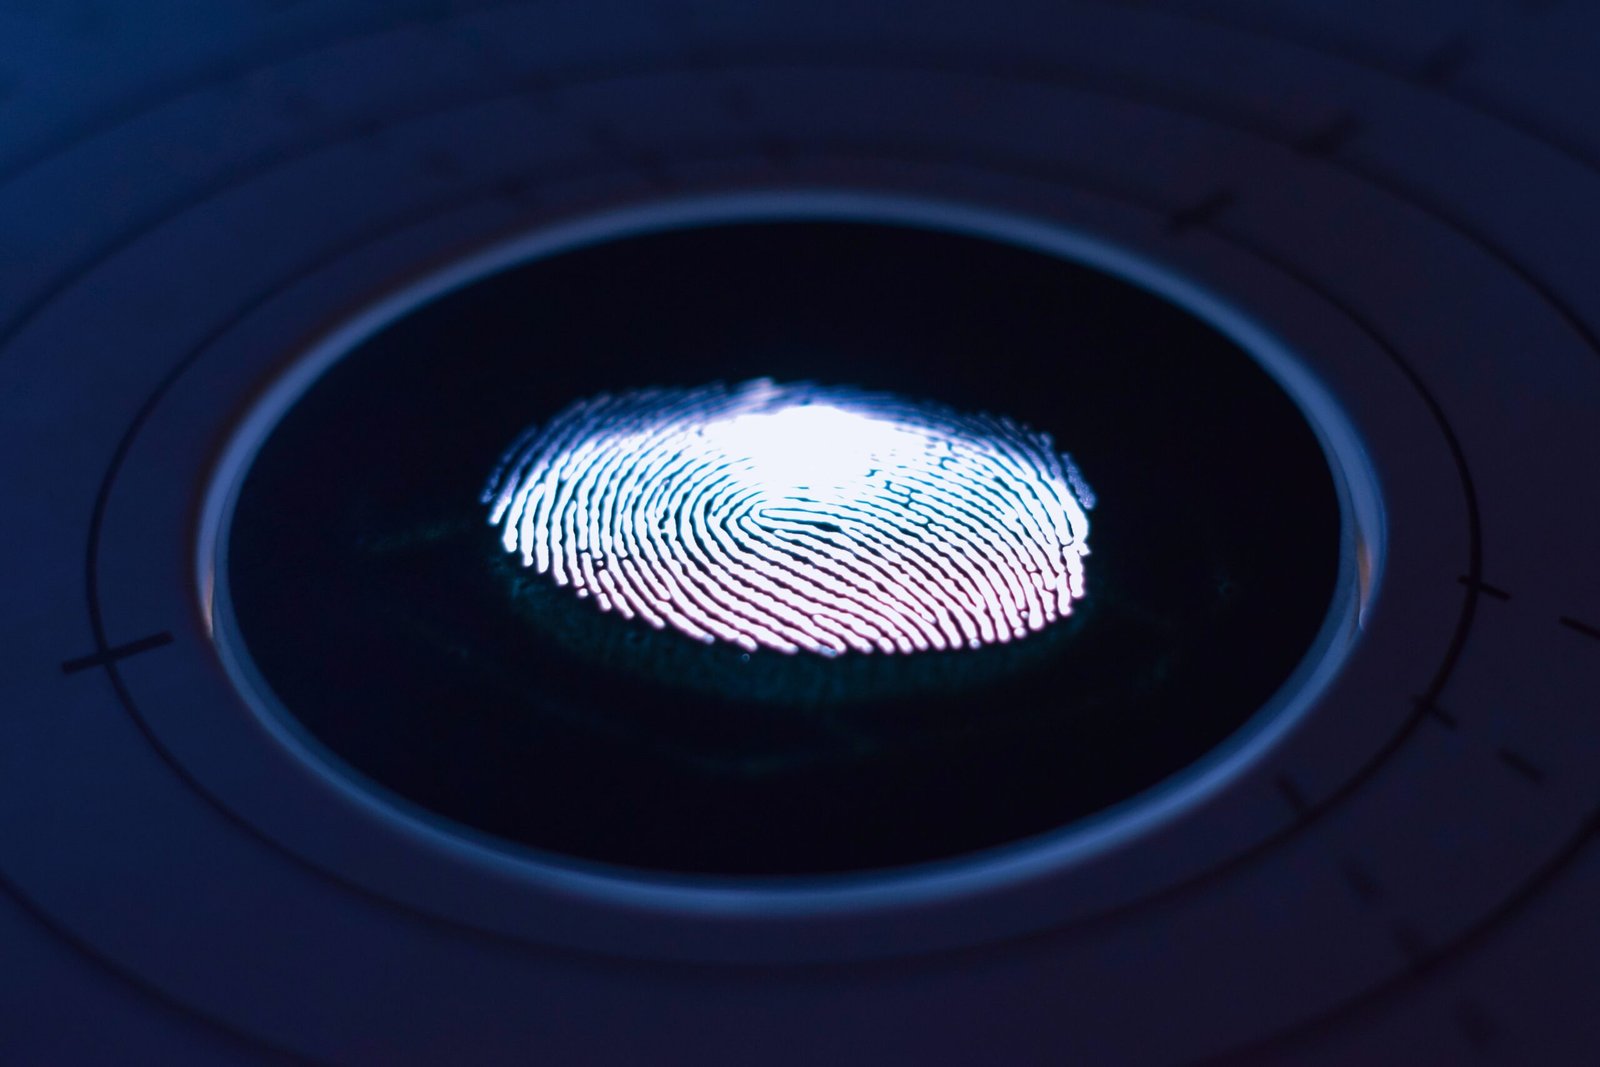 fingerprint security image